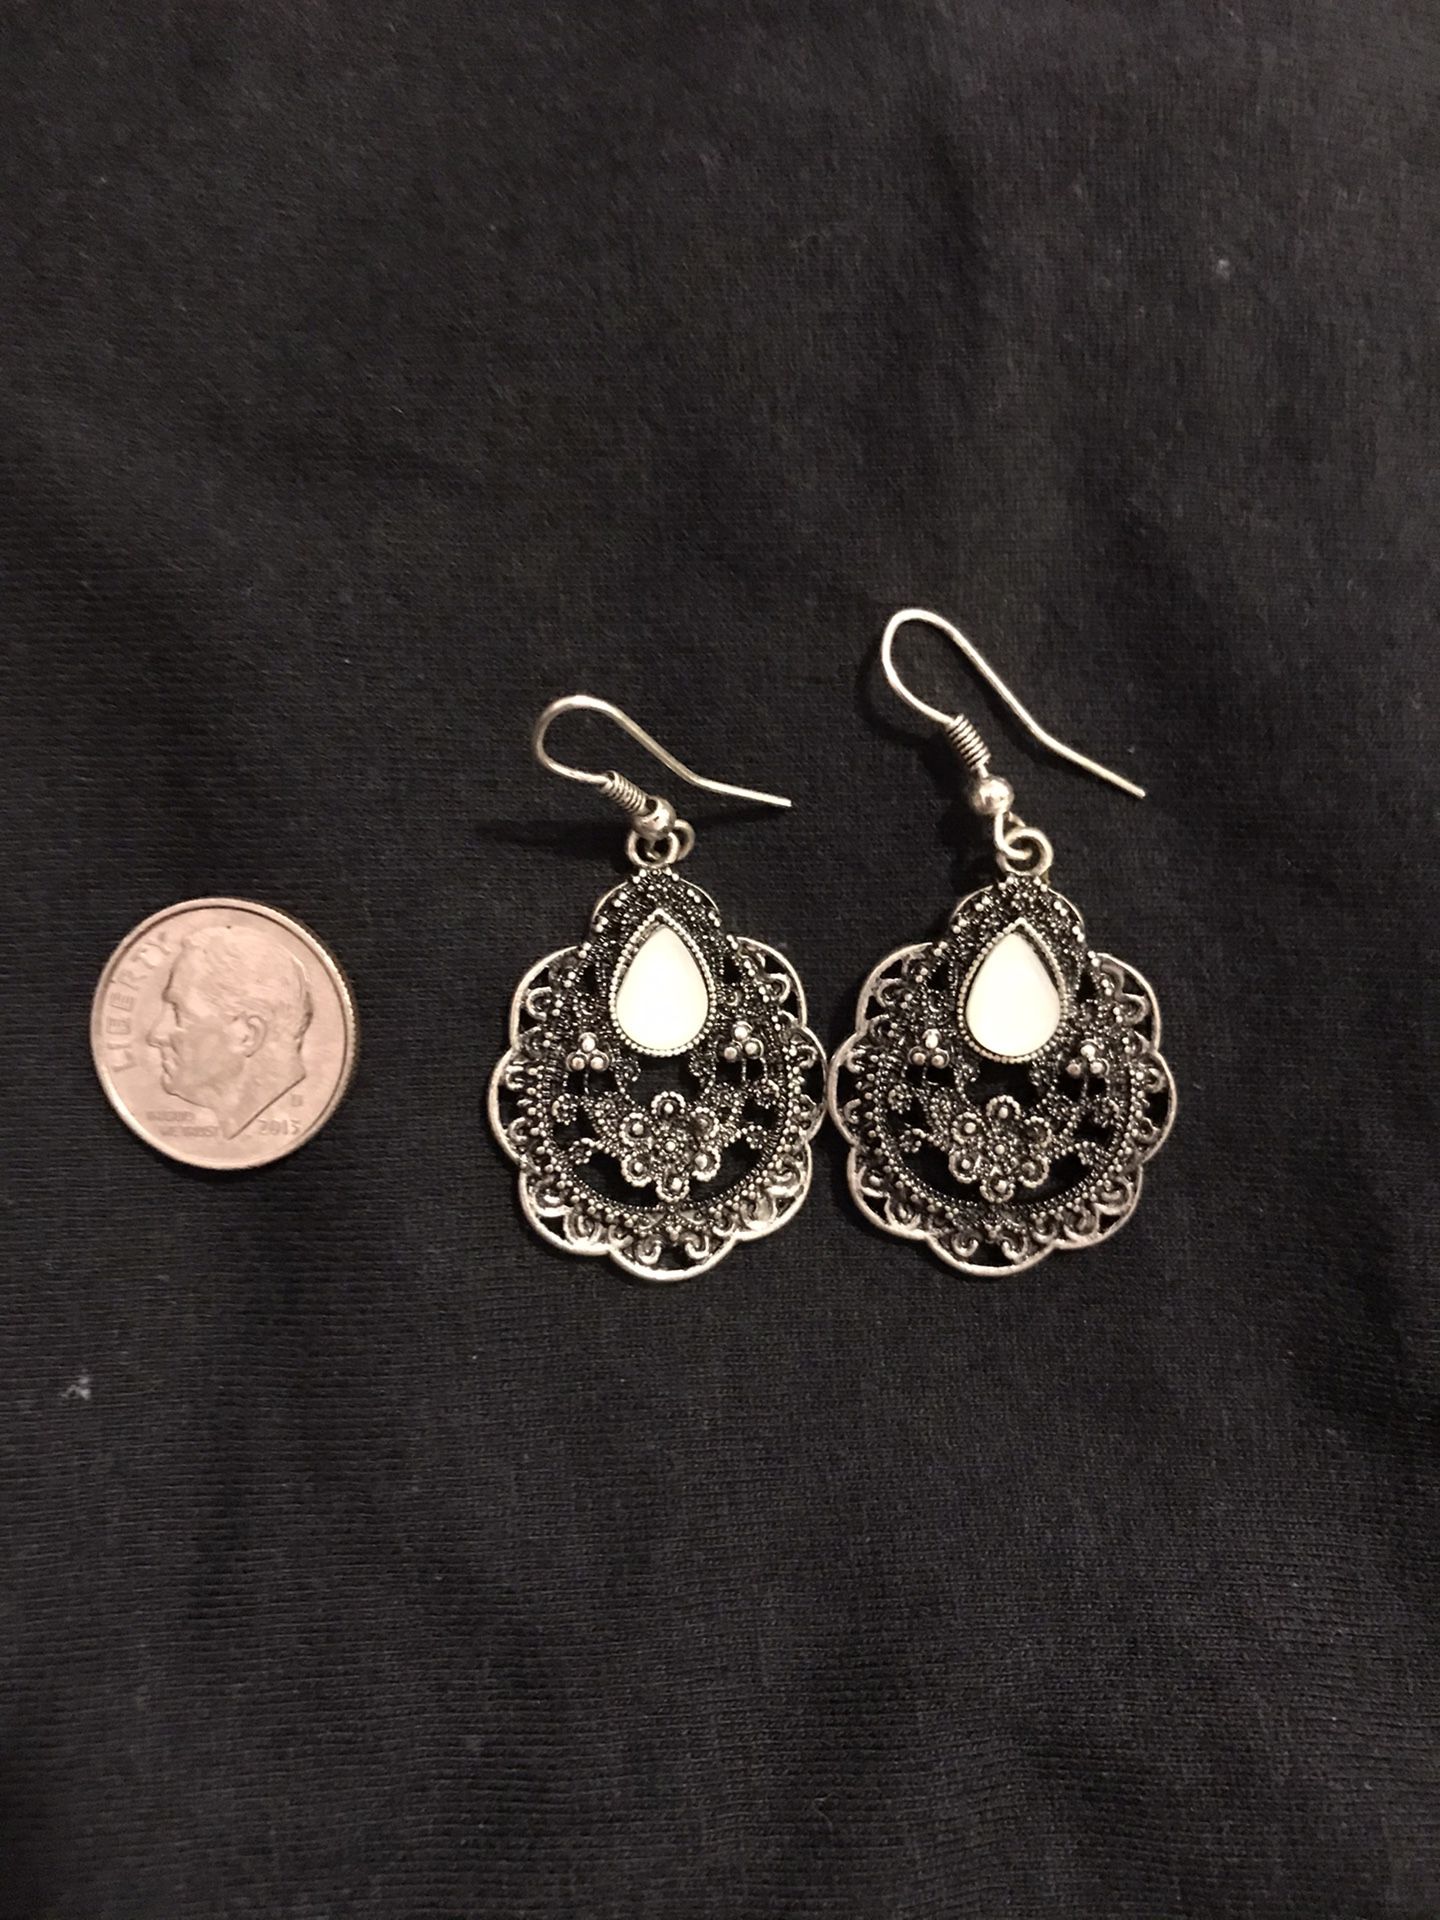 Moonstone boho earrings